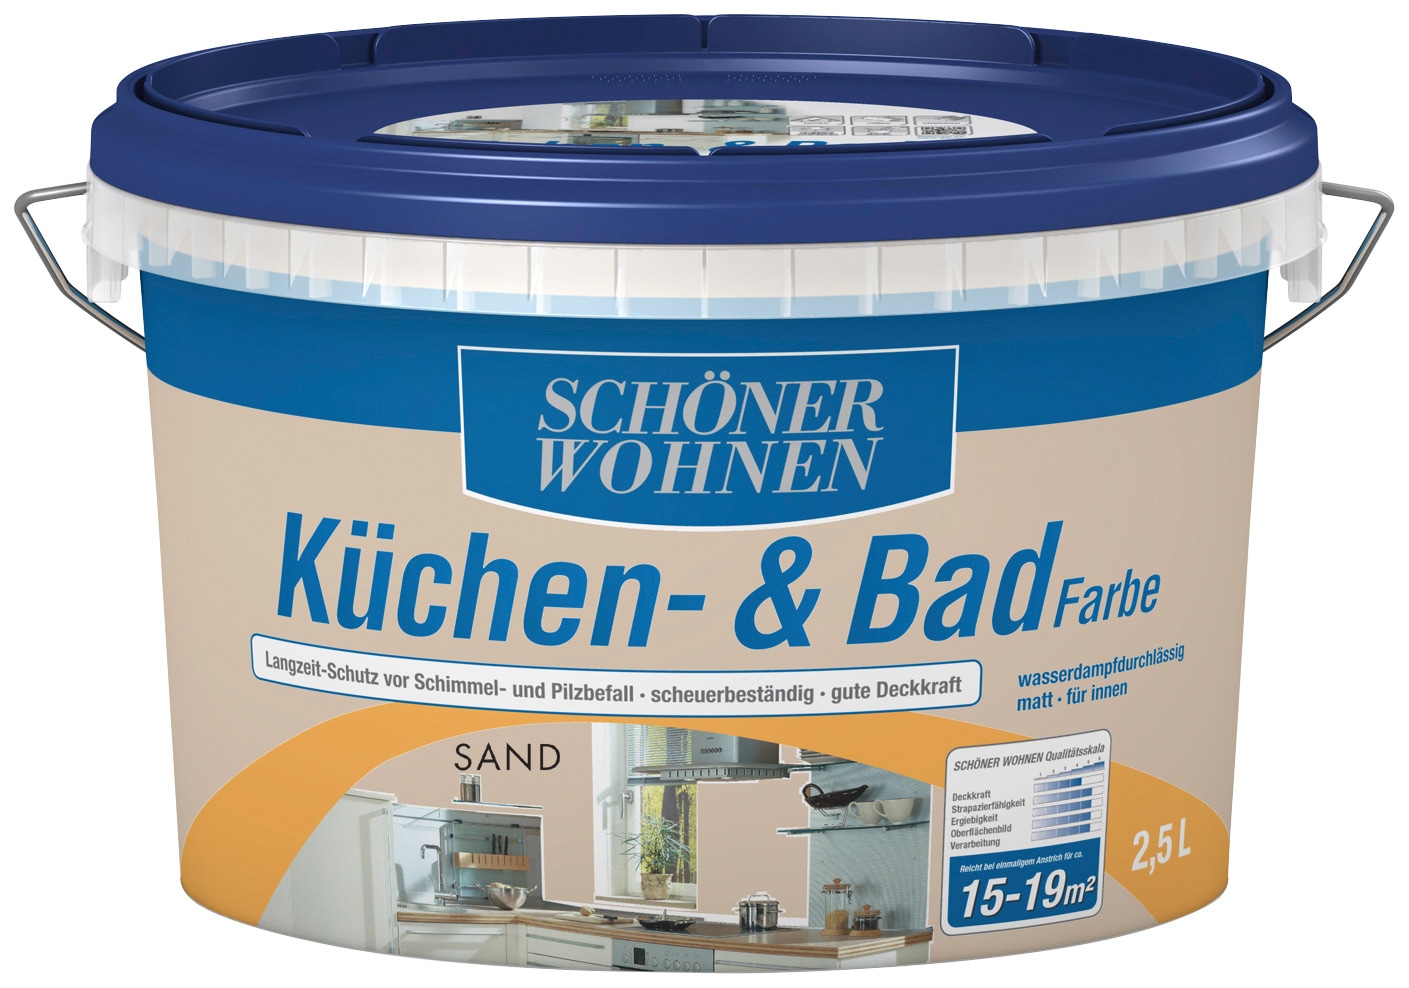 SCHÖNER WOHNEN FARBE Wandfarbe »Küchen- & Badfarbe«, 2,5 Liter, sand, Langzeitschutz vor Schimmel- und Pilzbefall